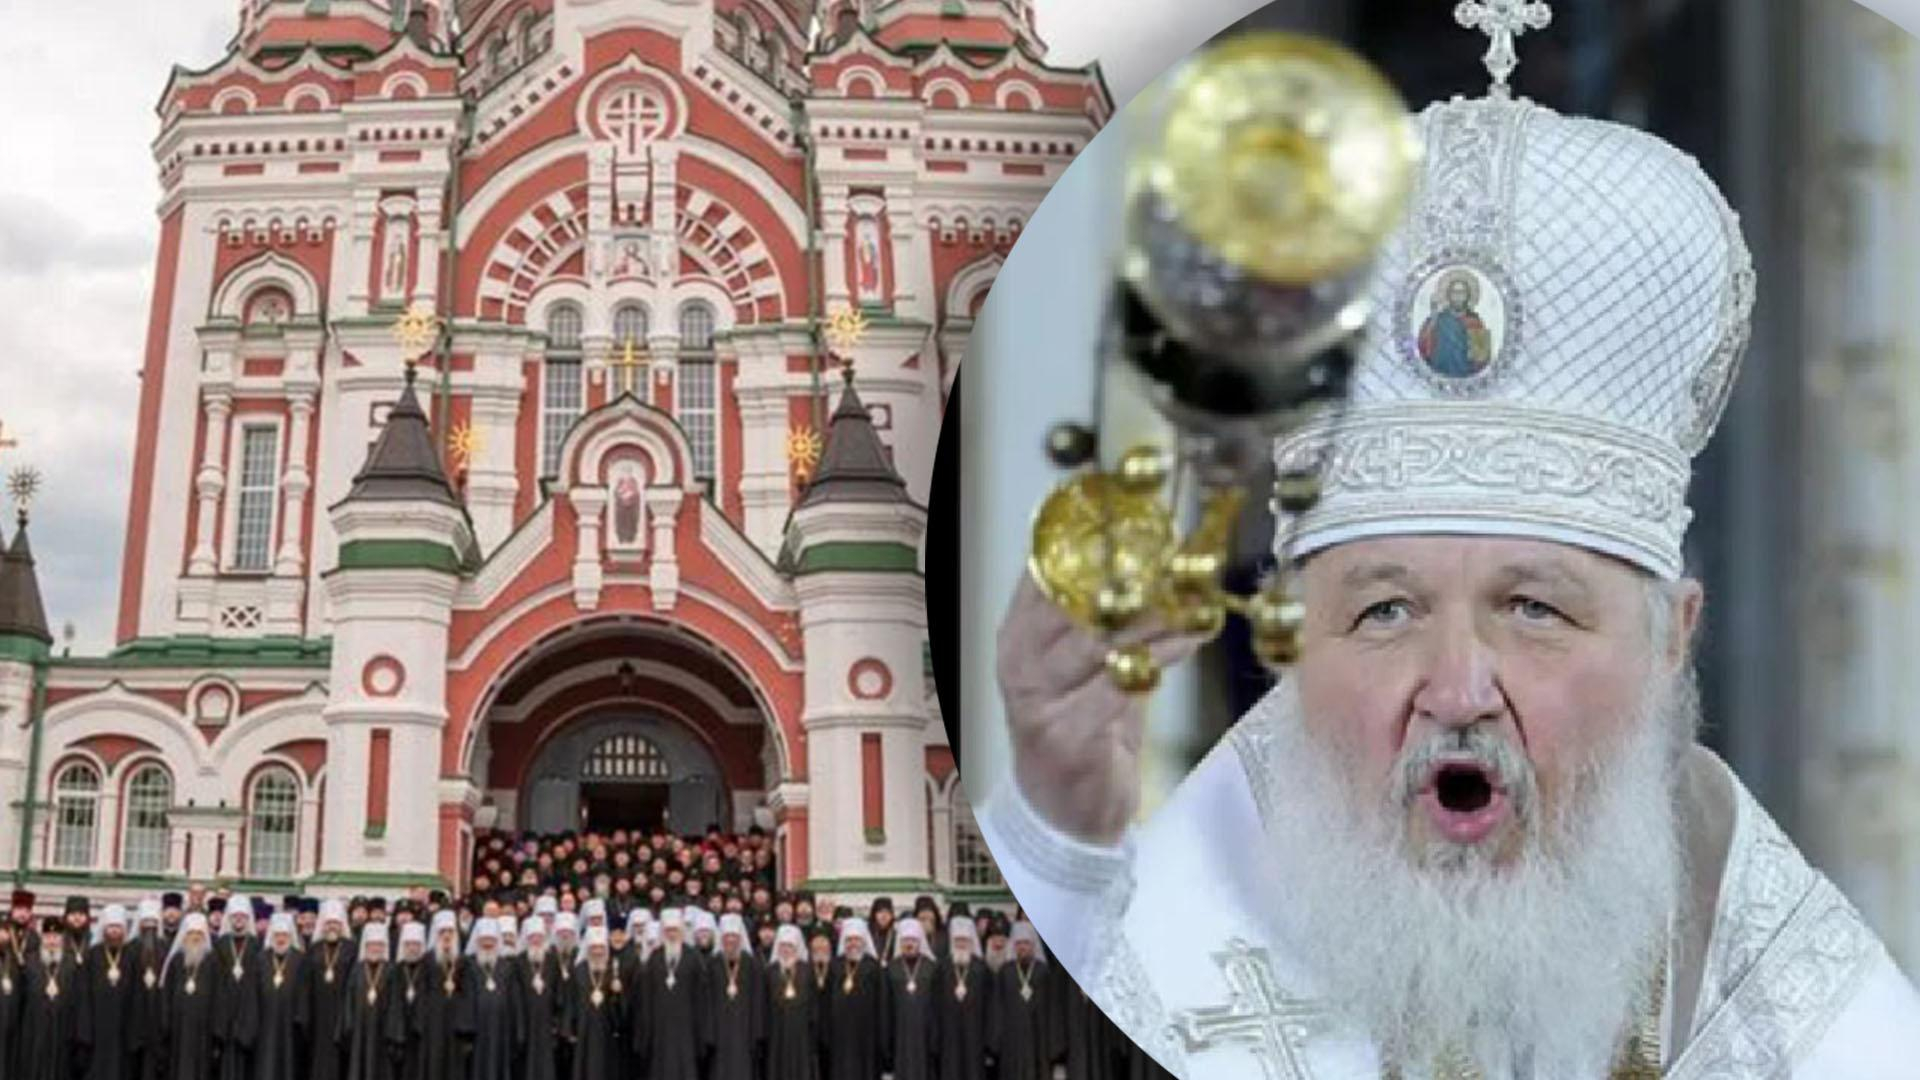 УПЦ МП все же сохранила духовное общение с Русской православной церковью, – СМИ